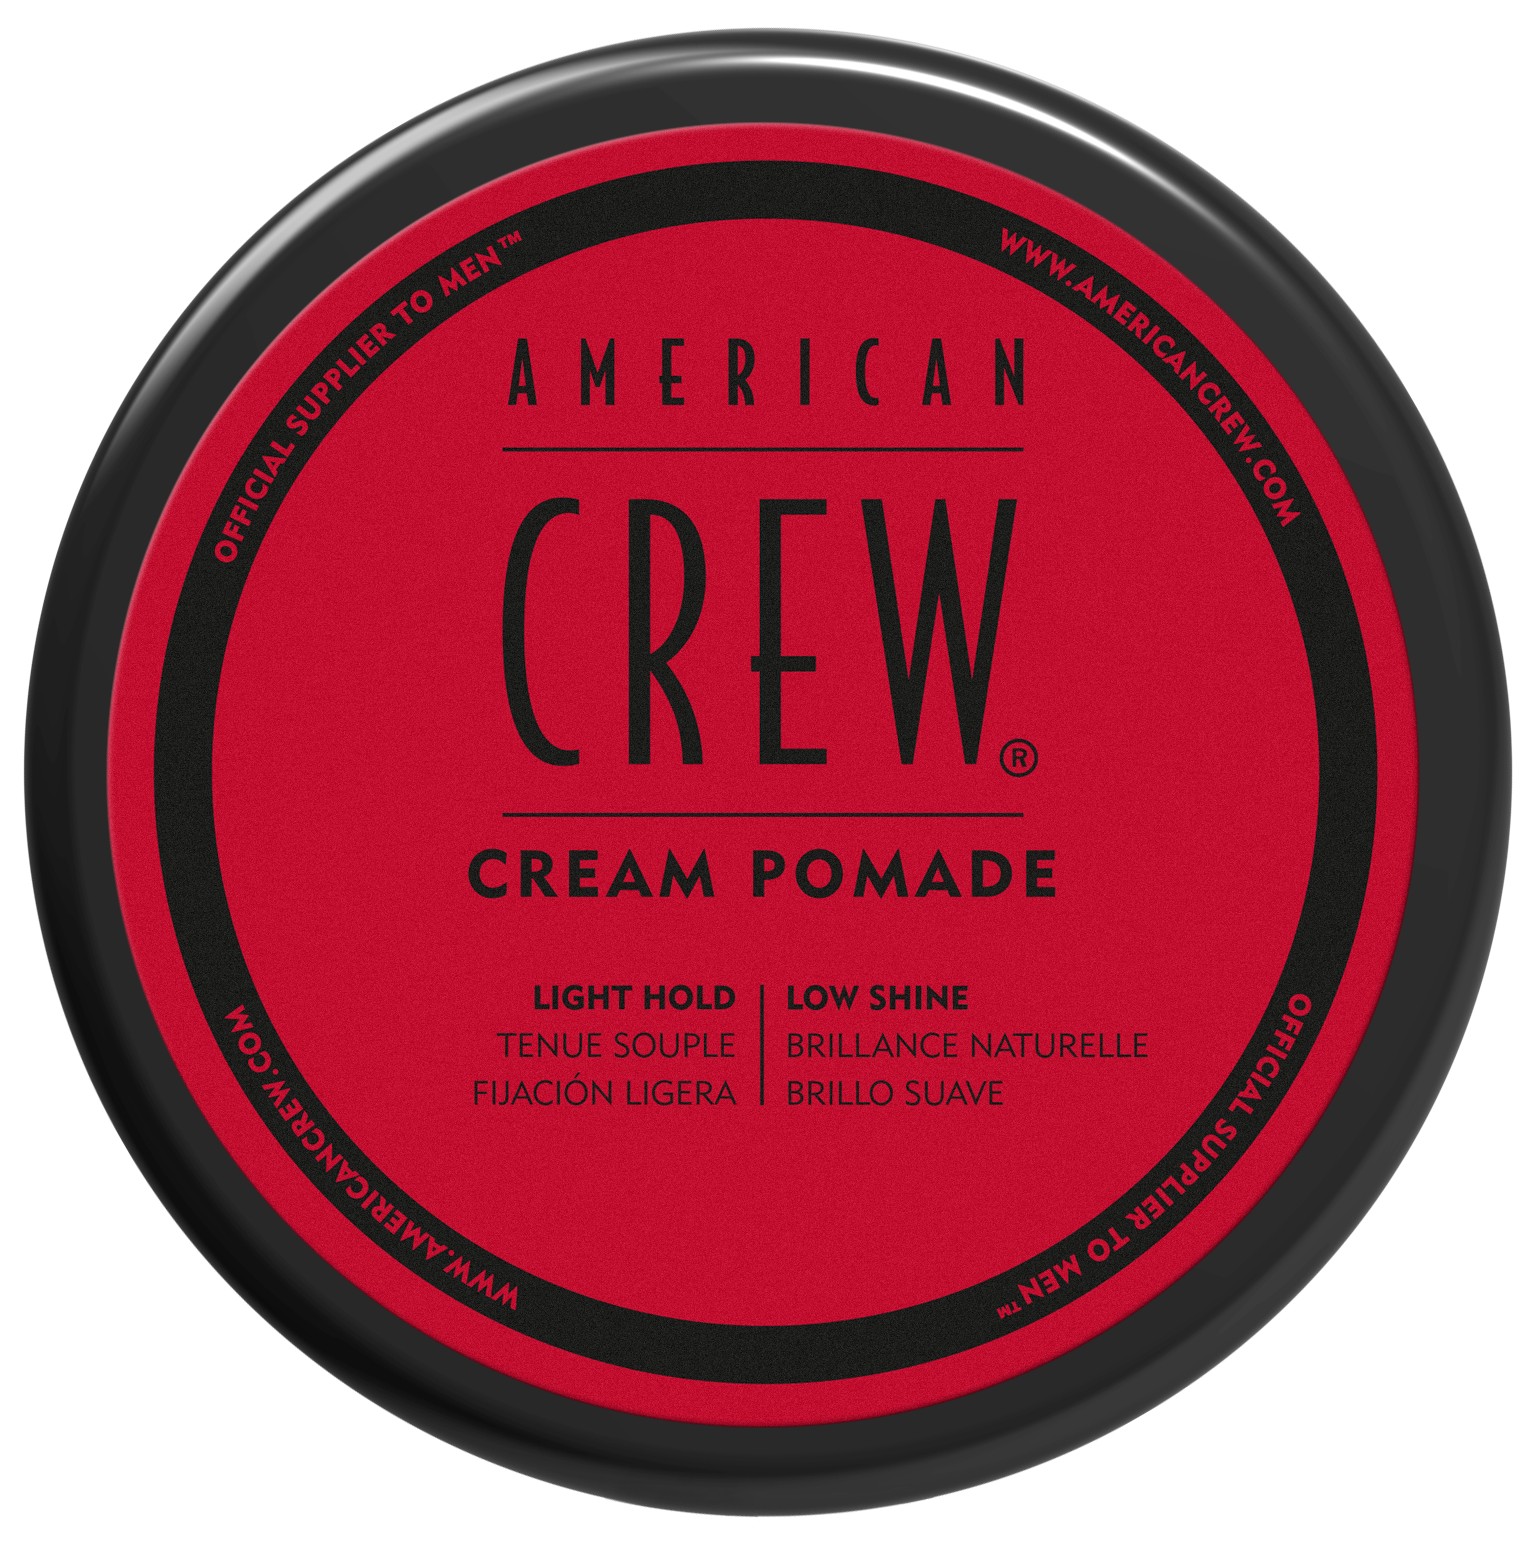 American Crew Krémová pomáda na vlasy pro muže (Cream Pomade) 85 g